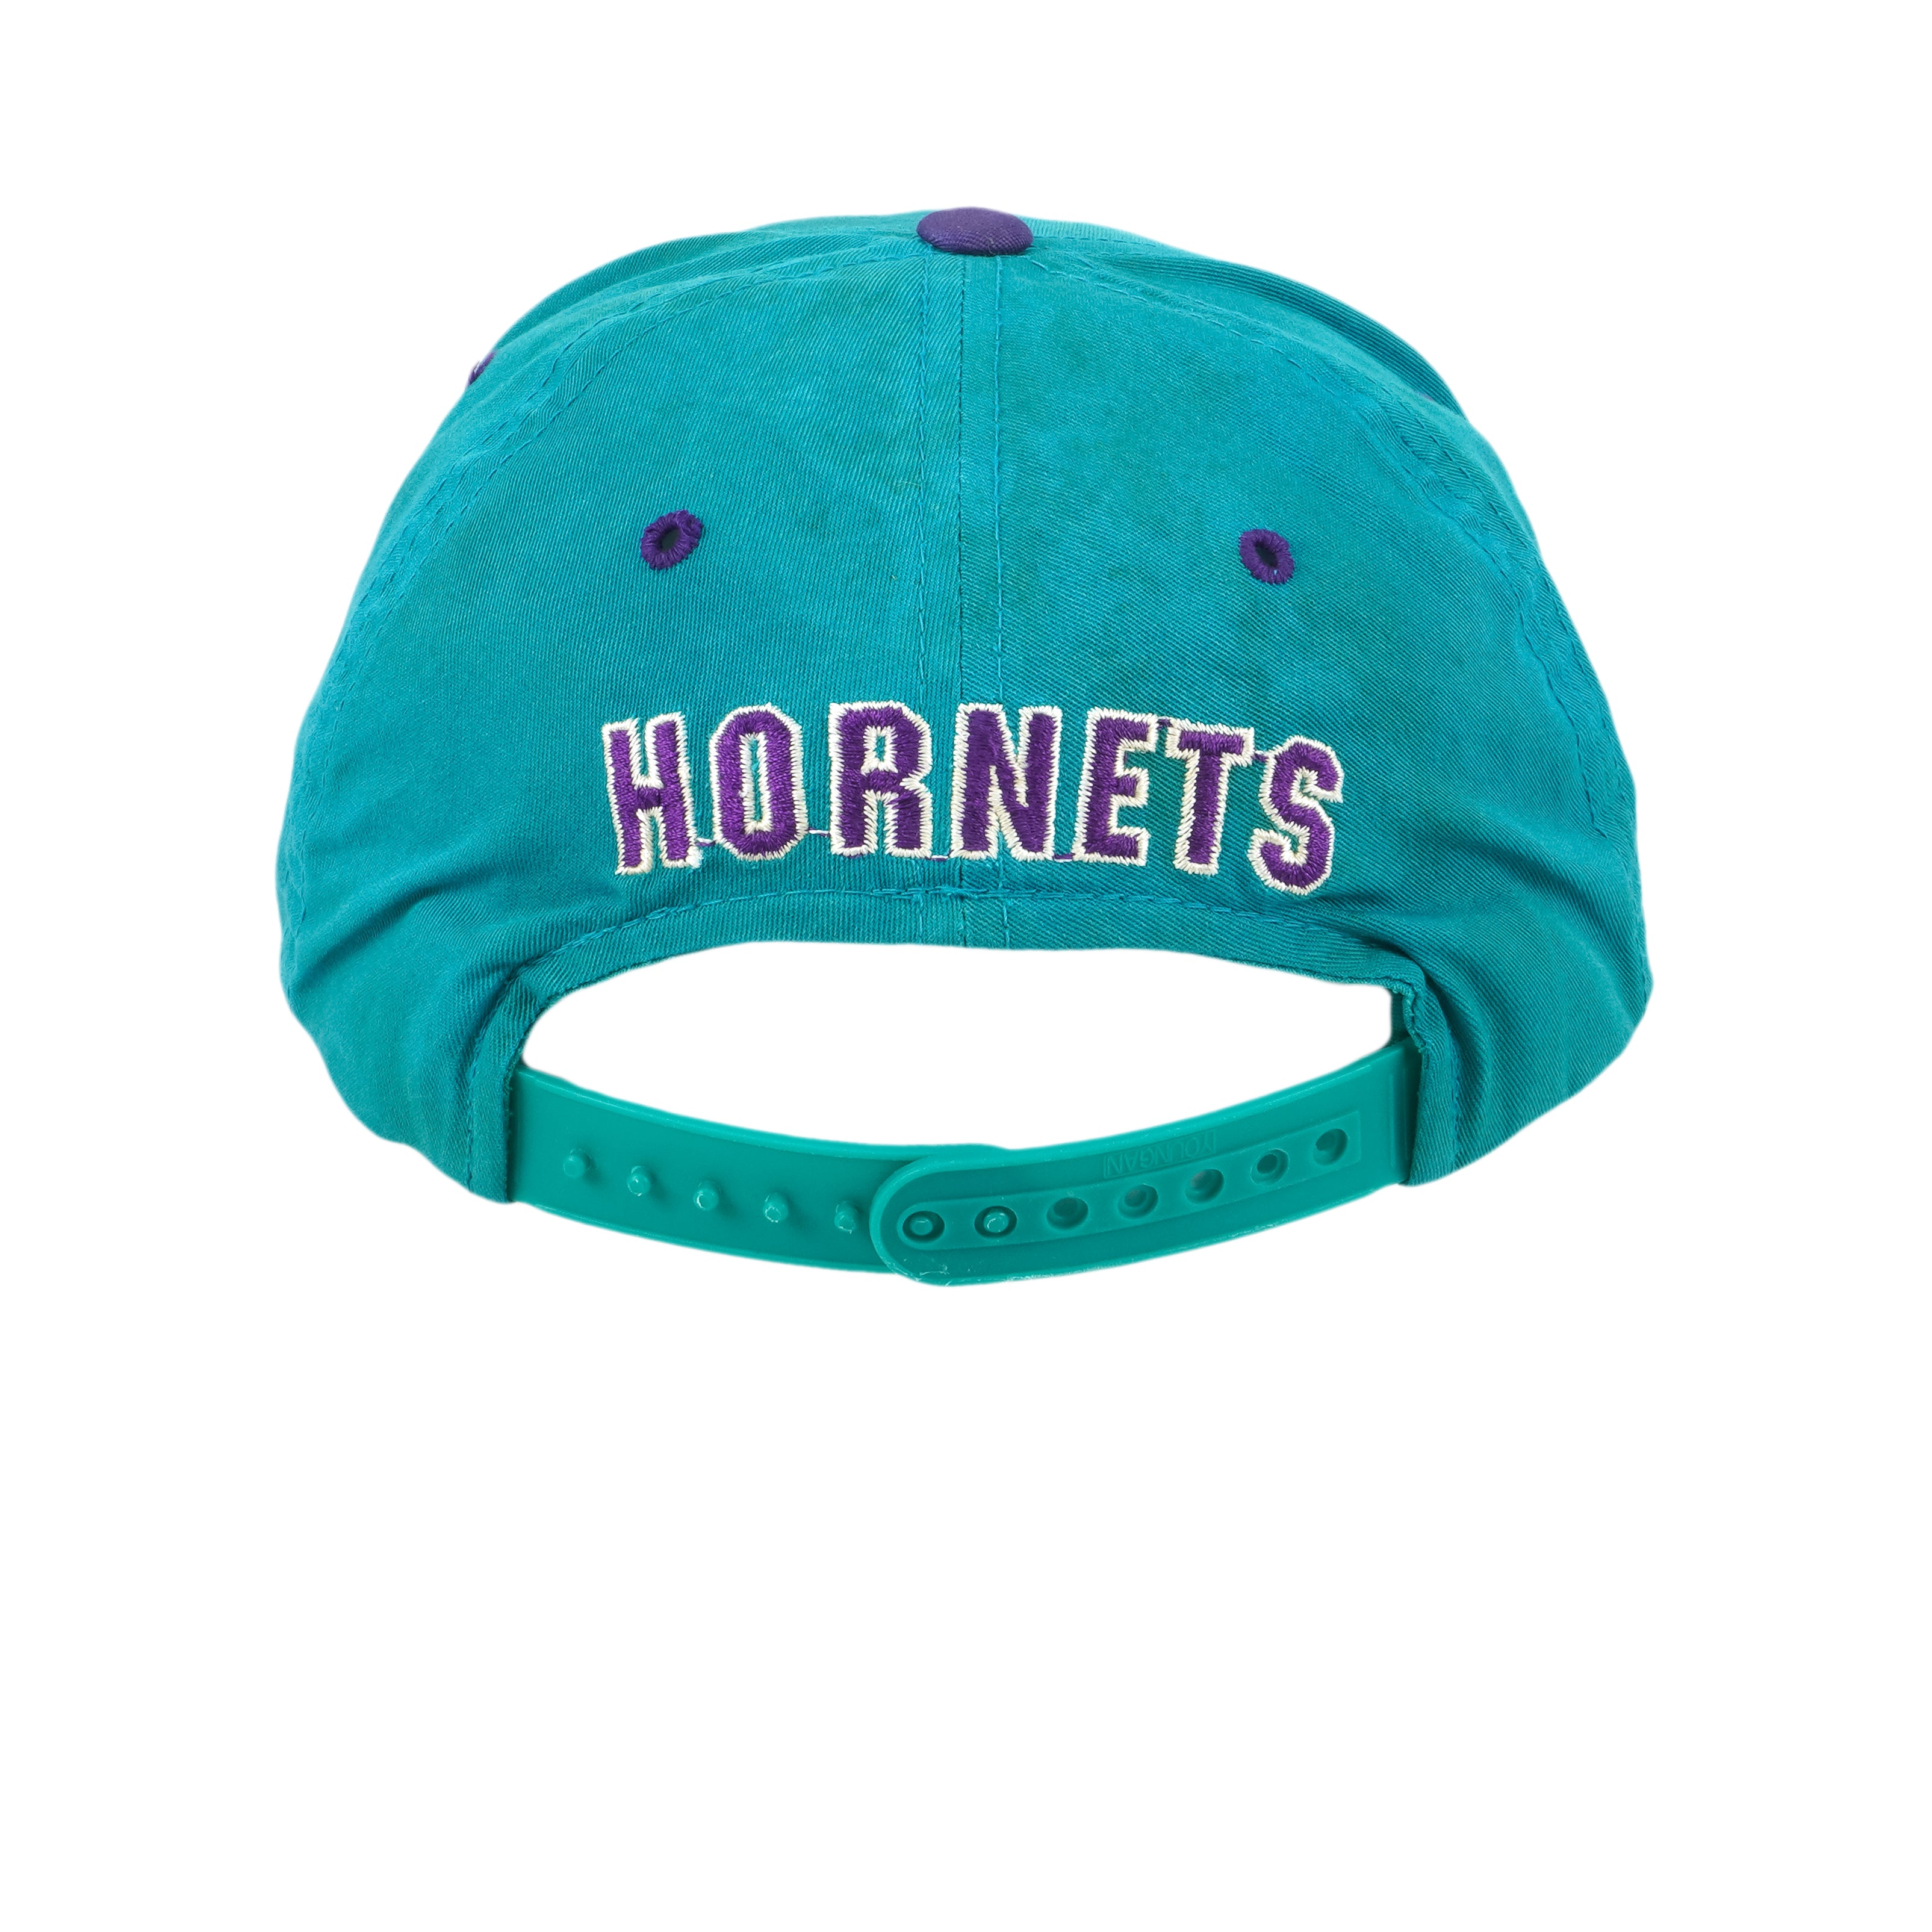 Vintage 1990s Charlotte Hornets Snapback Hat